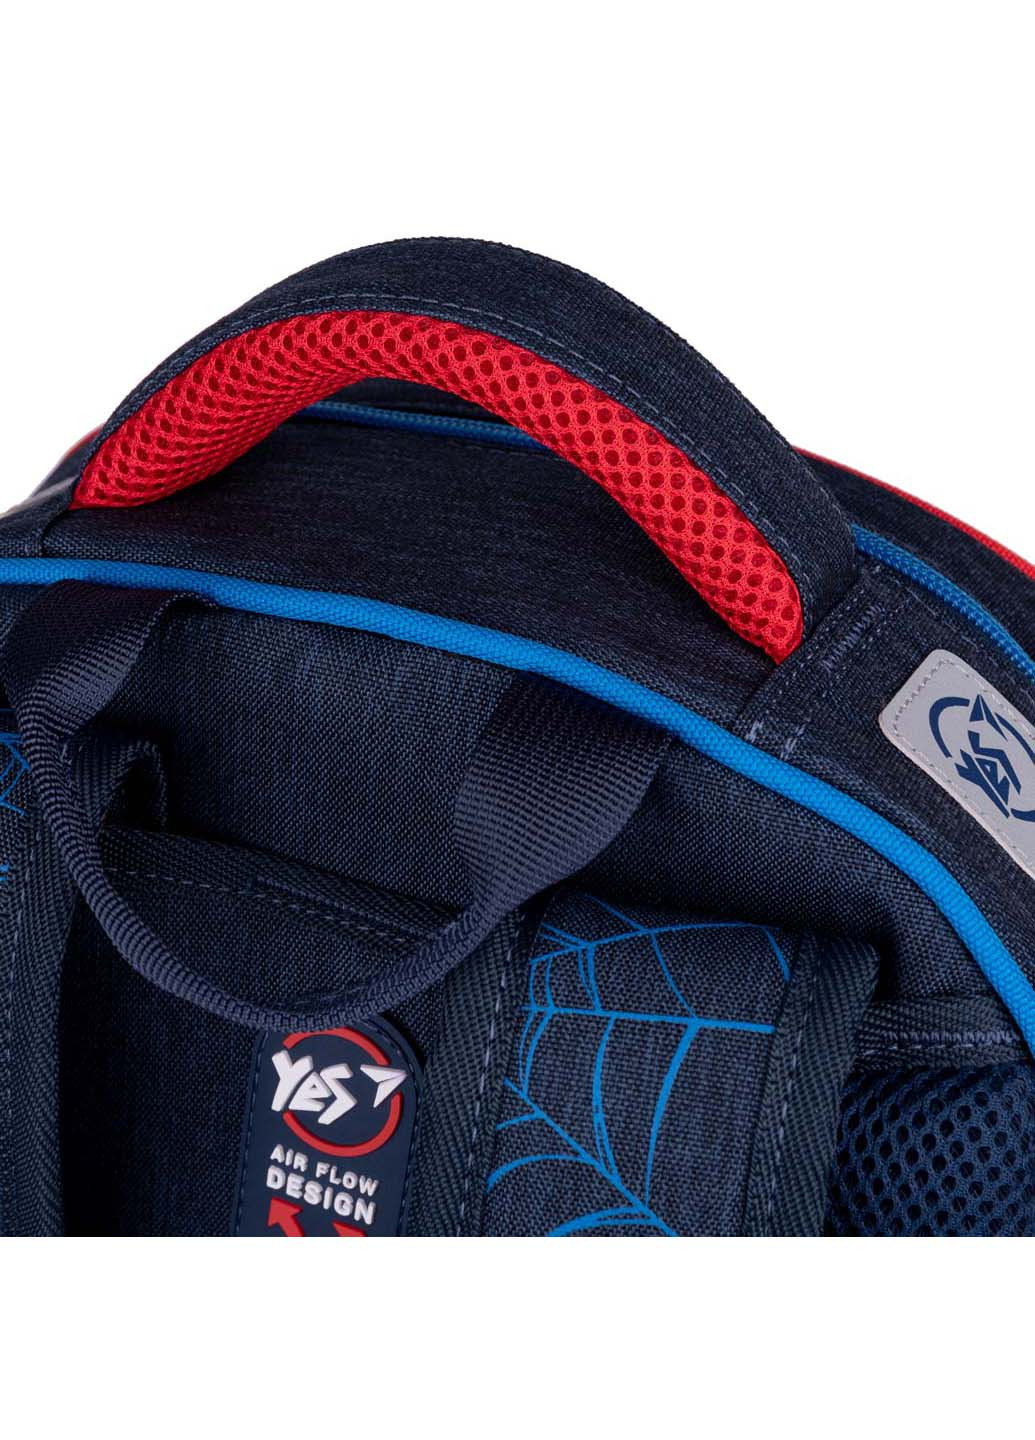 Шкільний рюкзак S-91 Marvel Spiderman Yes (260164125)